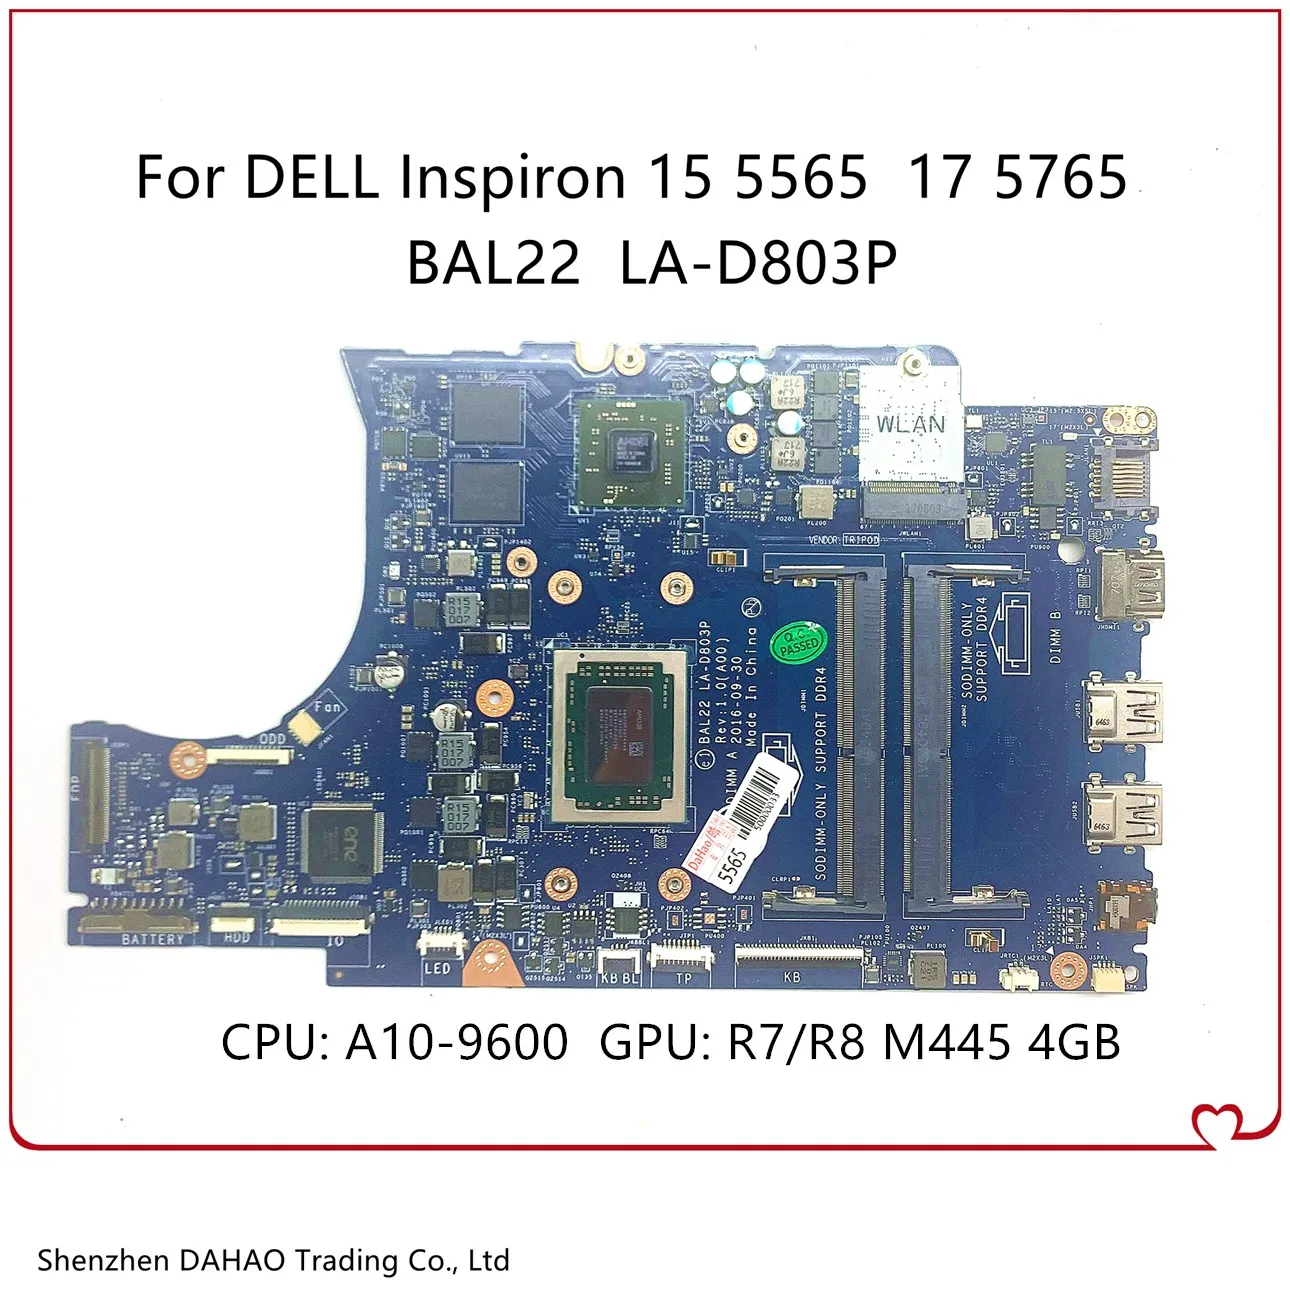 CN-0R1WJH  DELL Inspiron 15 5565 17 5765     BAL22 LA-D803P 0R1WJH R1WJH  A10-9600 CPU R7/R8 M445 4G-GPU